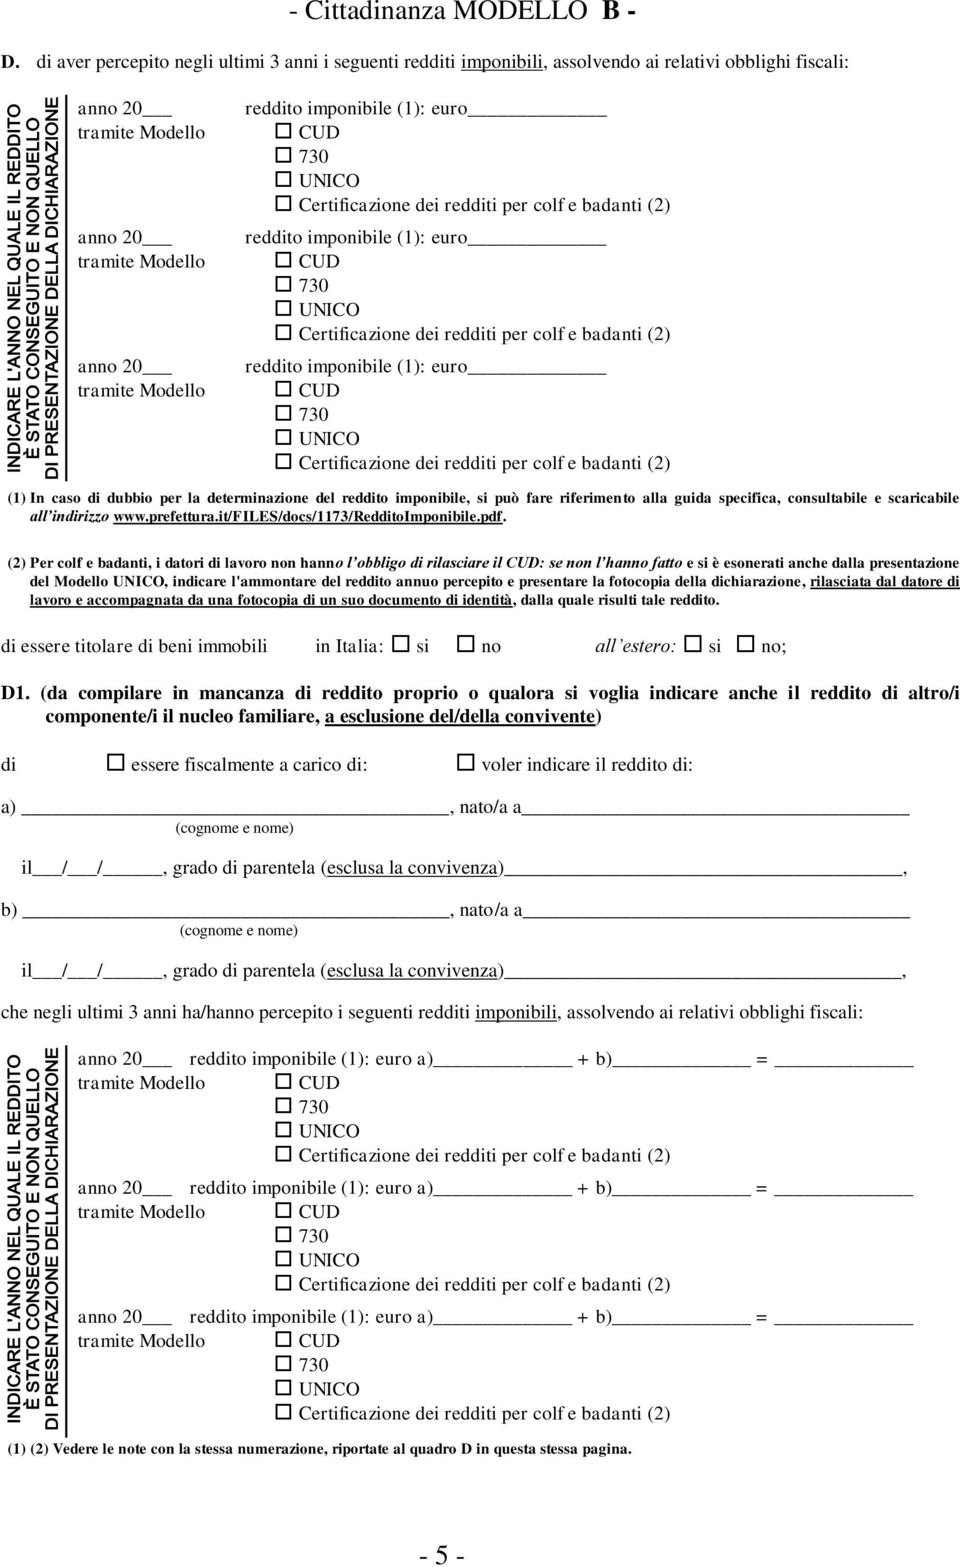 specifica, consultabile e scaricabile all indirizzo www.prefettura.it/files/docs/1173/redditoimponibile.pdf.